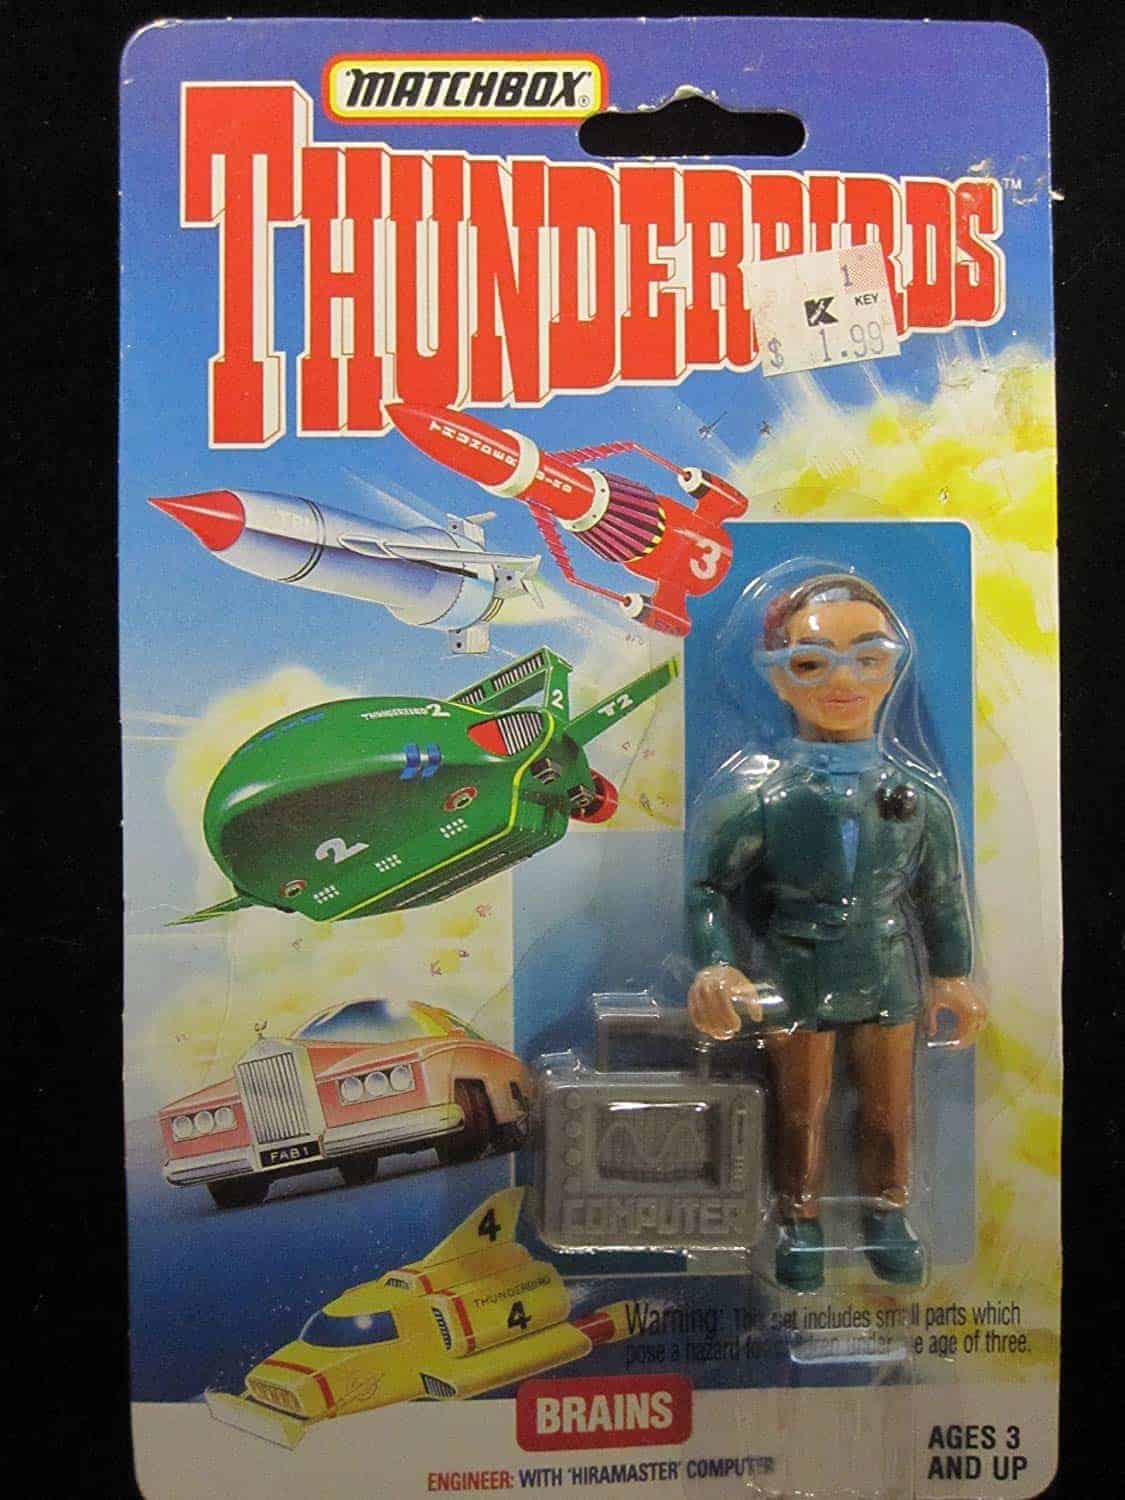 Personaje de Thunderbirds-Brains